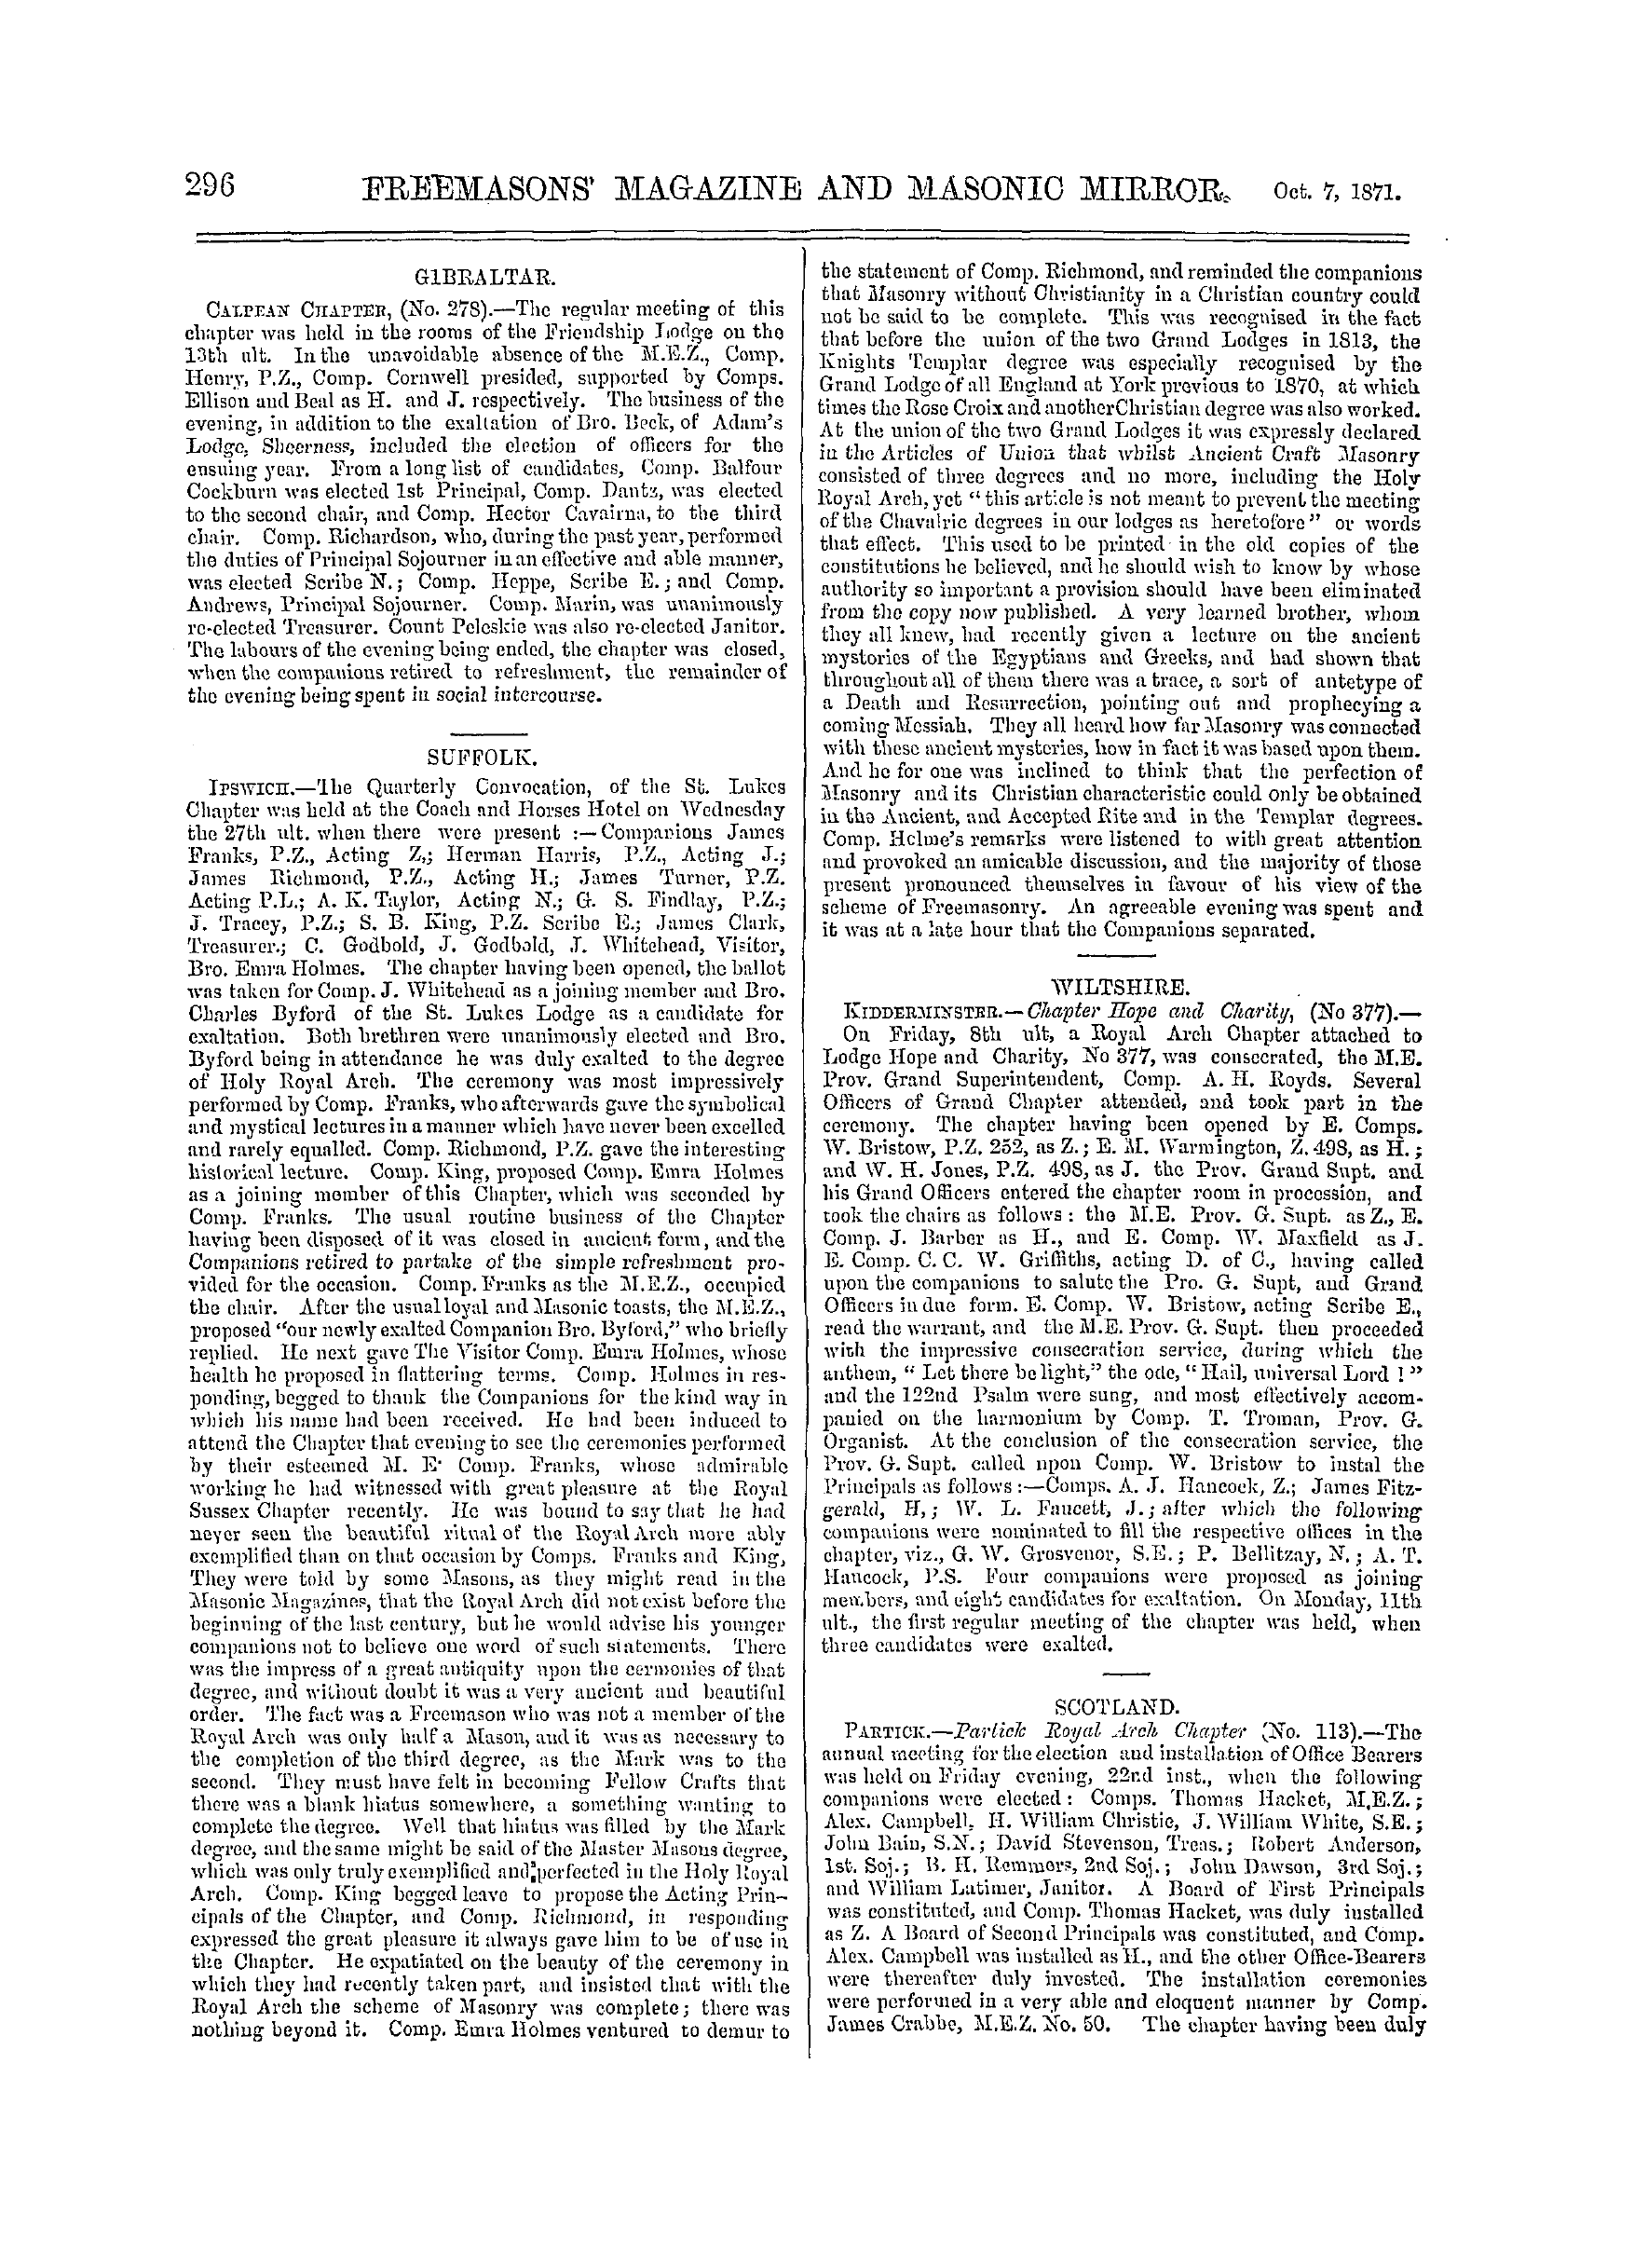 The Freemasons' Monthly Magazine: 1871-10-07: 16